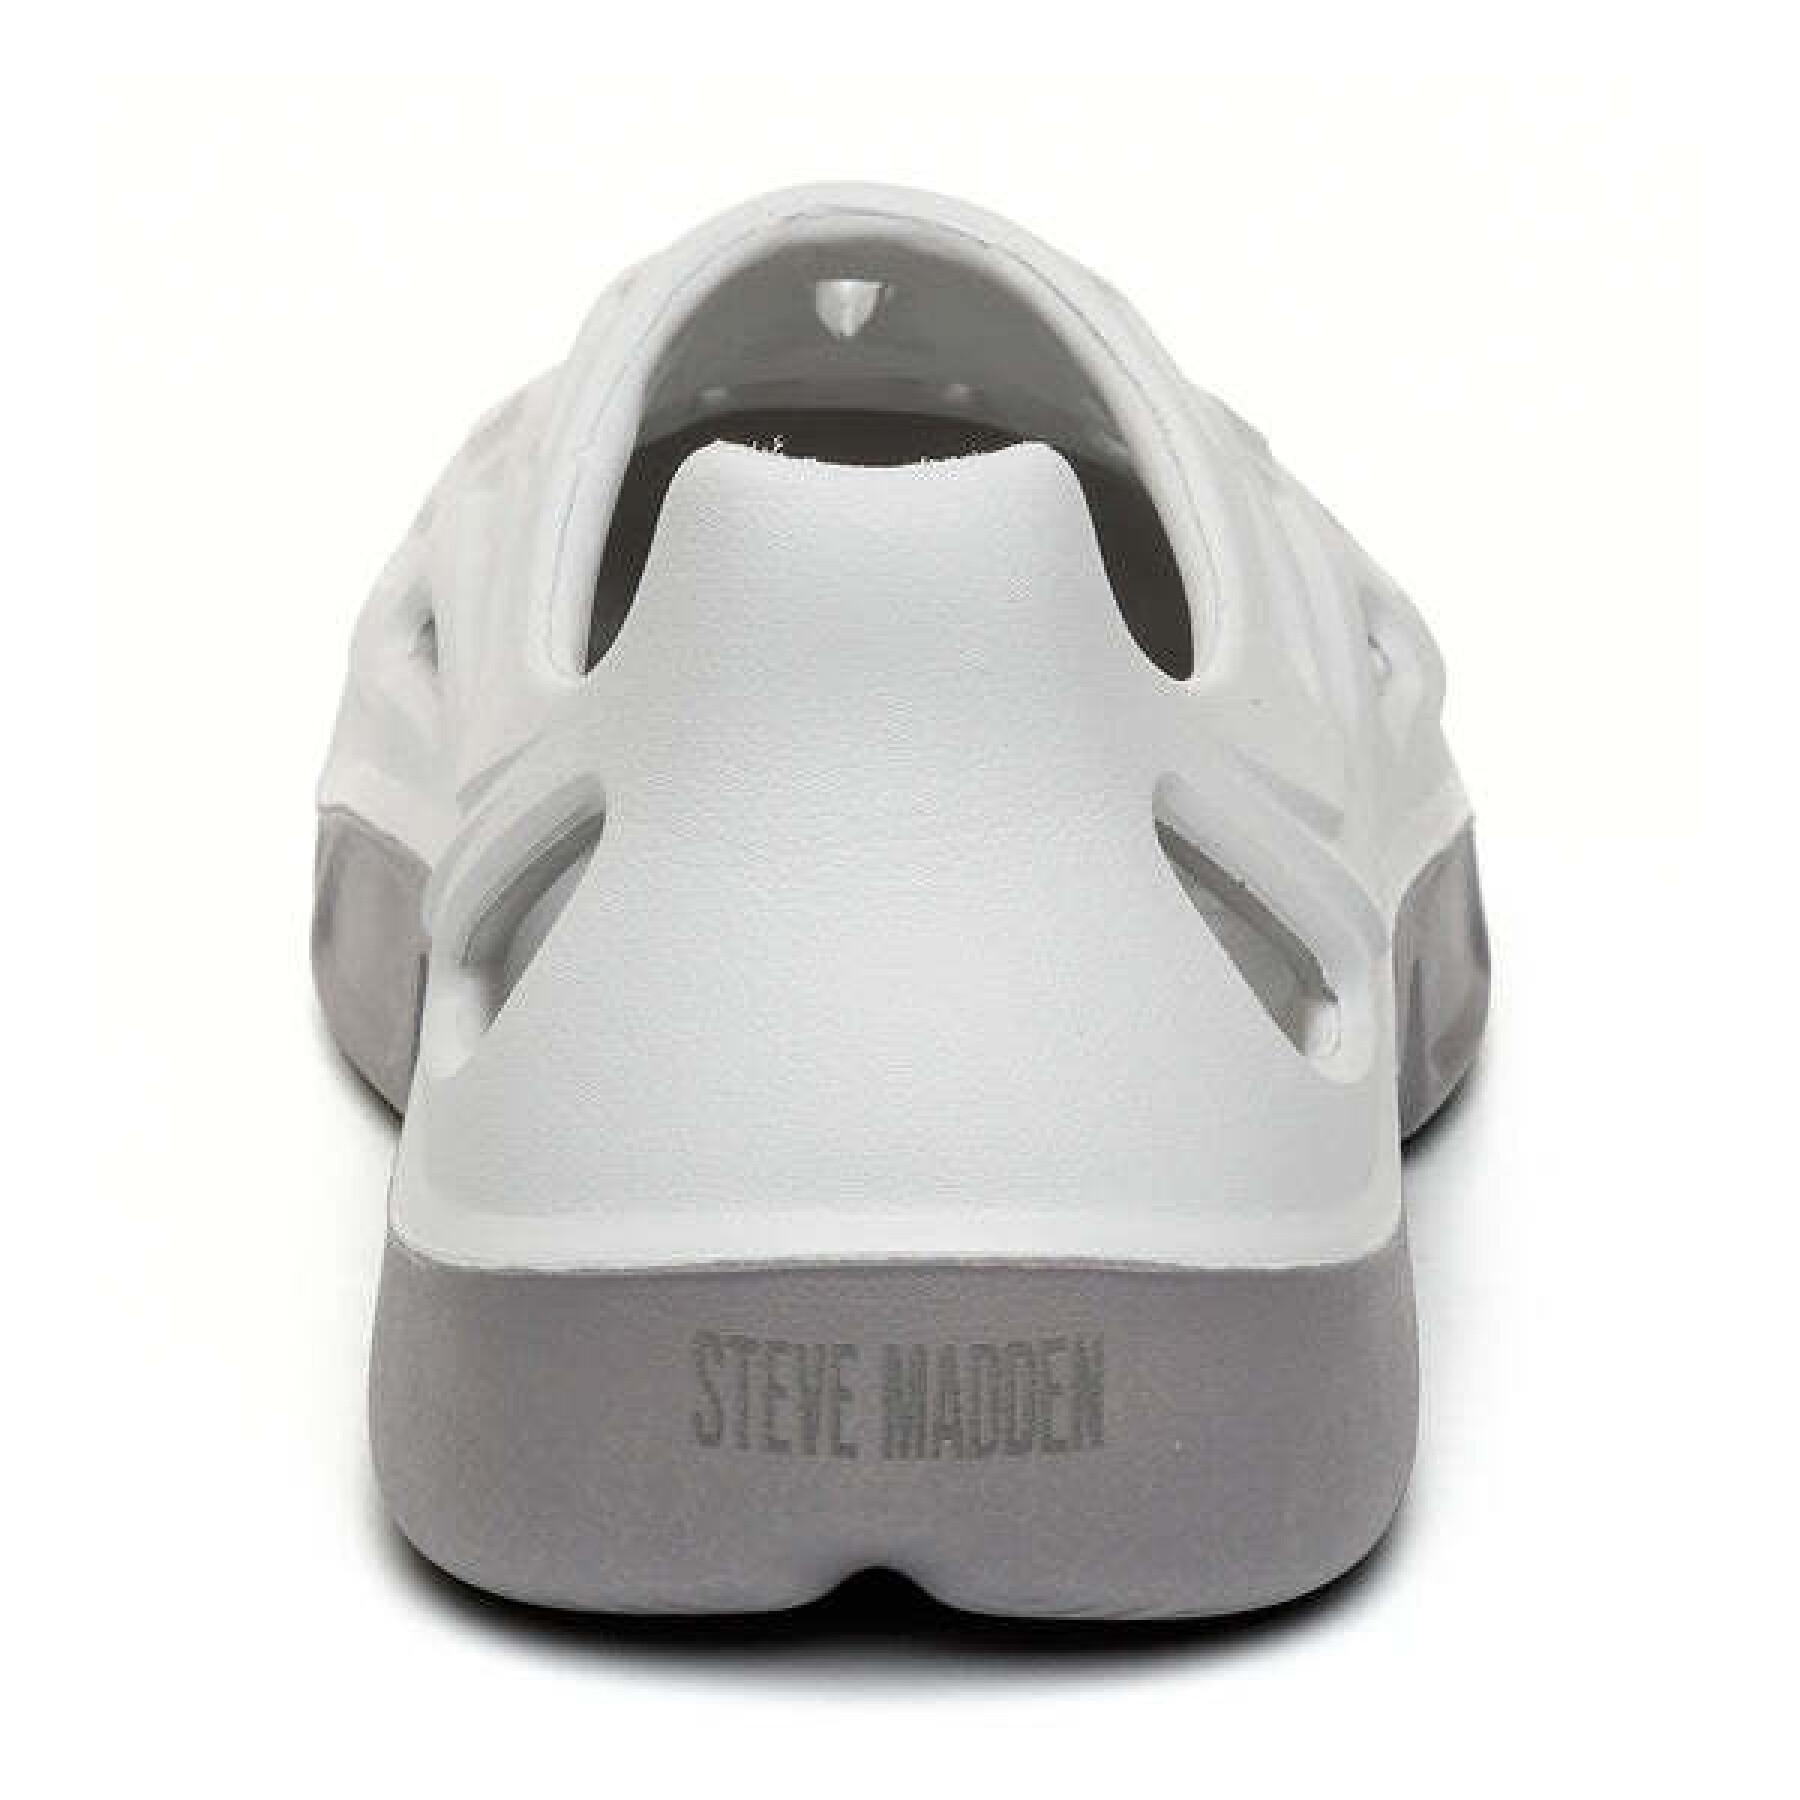 Women's sandals Steve Madden Vine